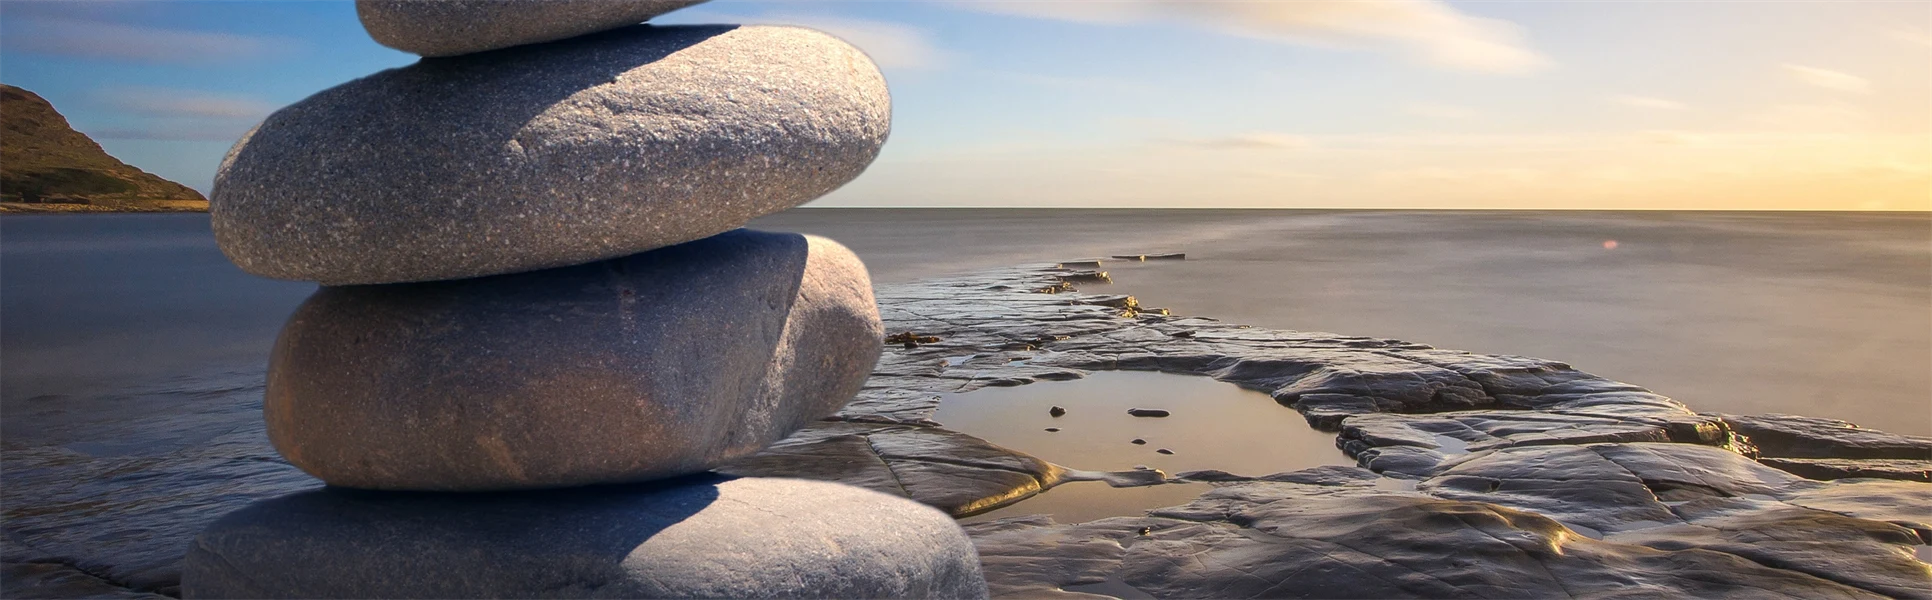 Släta stenar staplade på varandra vid stranden. 